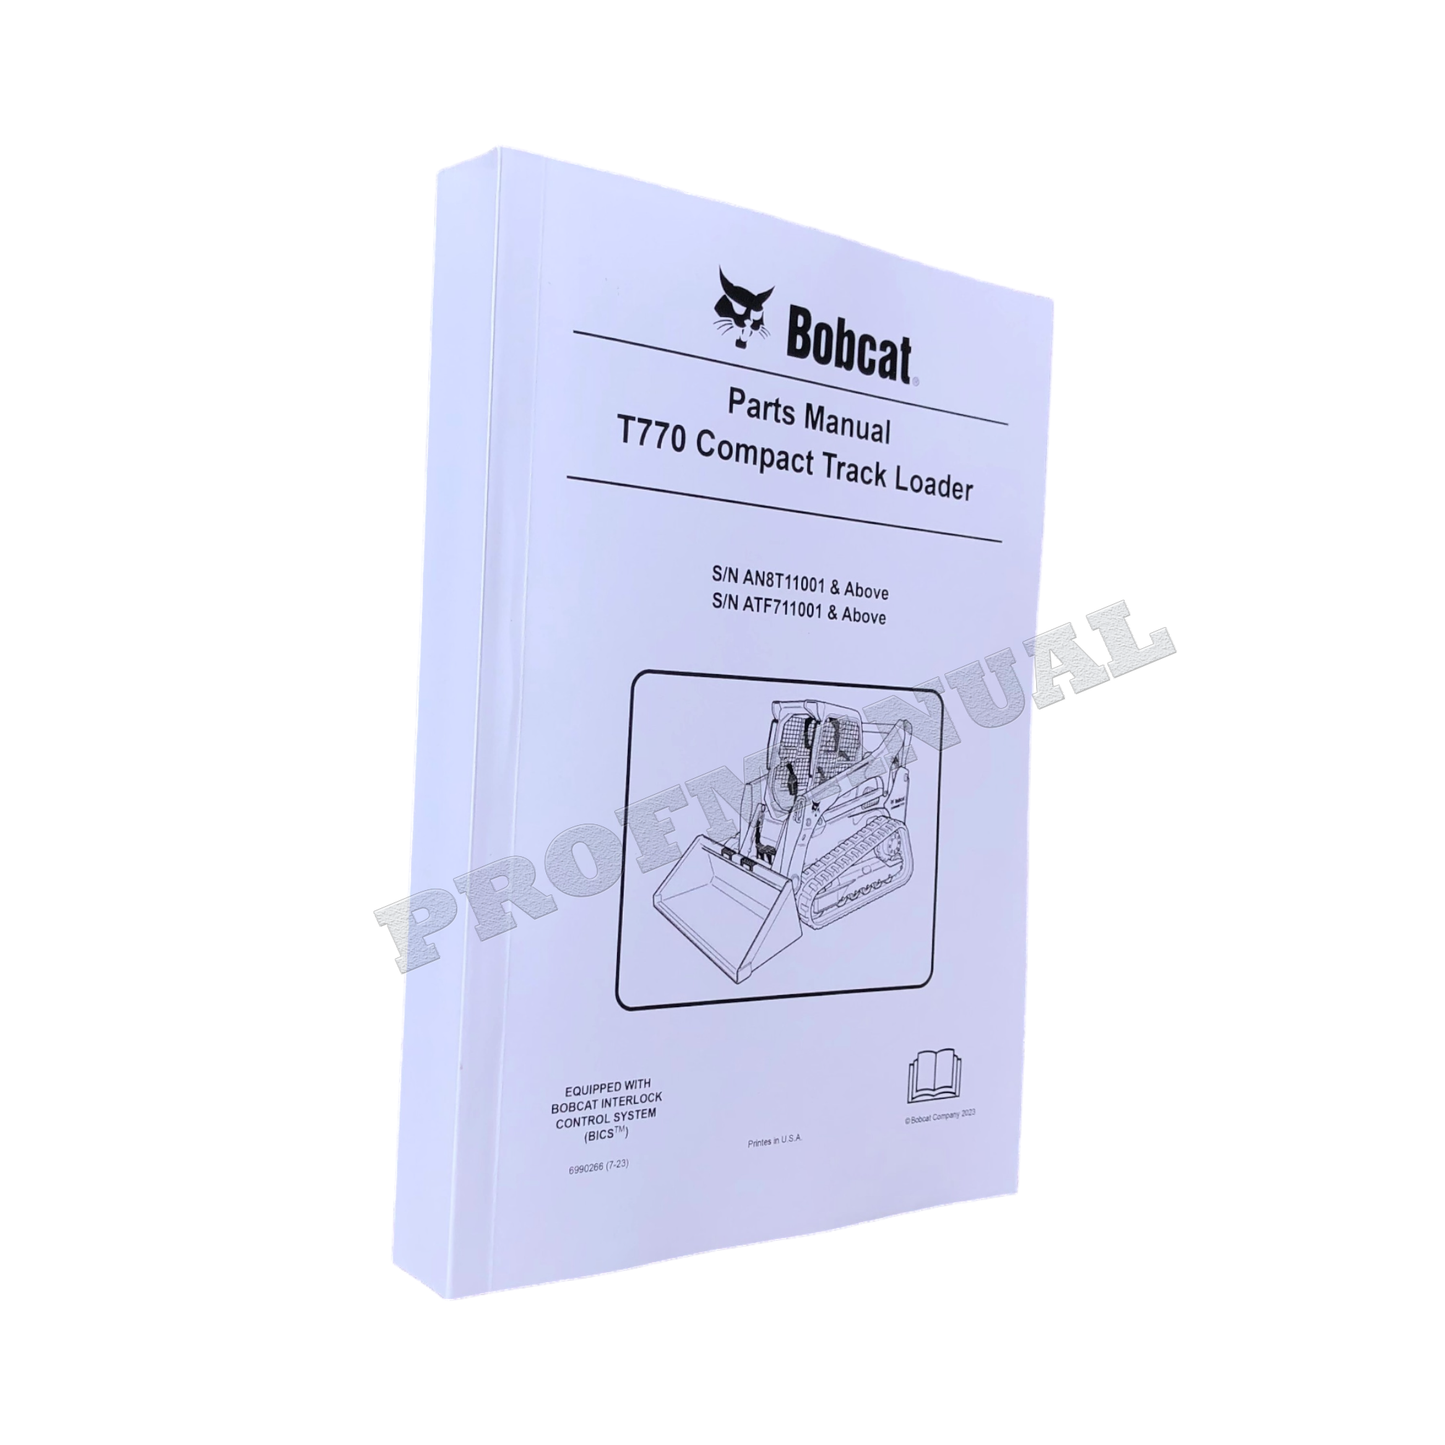 Bobcat T770 Compact Track Loader Parts Catalog Manual AN8T11001- ATF711001-